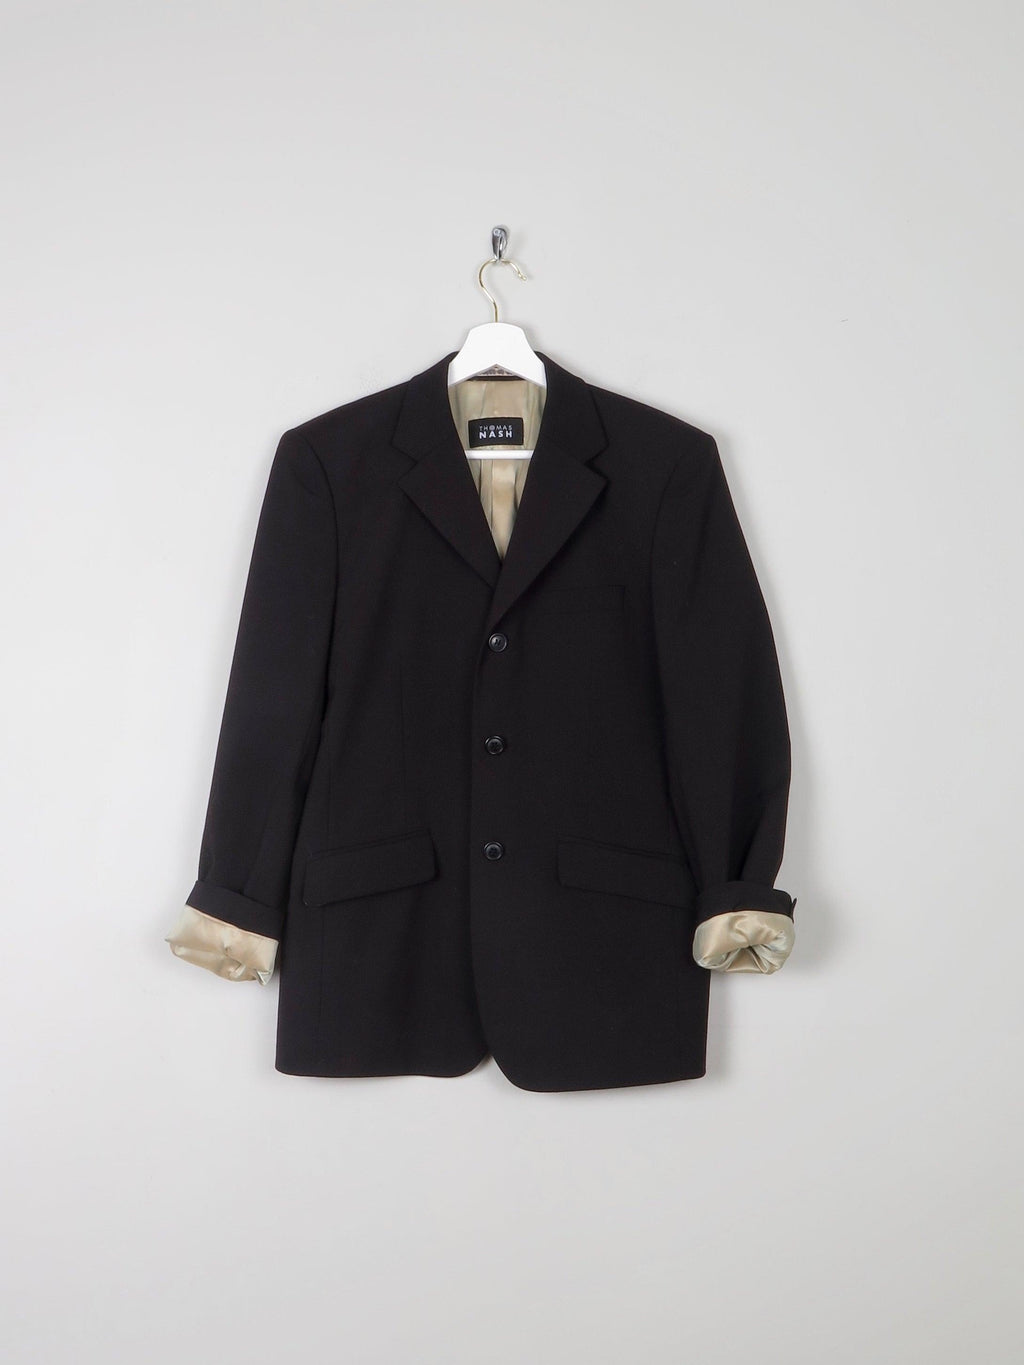 Mens Black Suit Jacket S 38" - The Harlequin